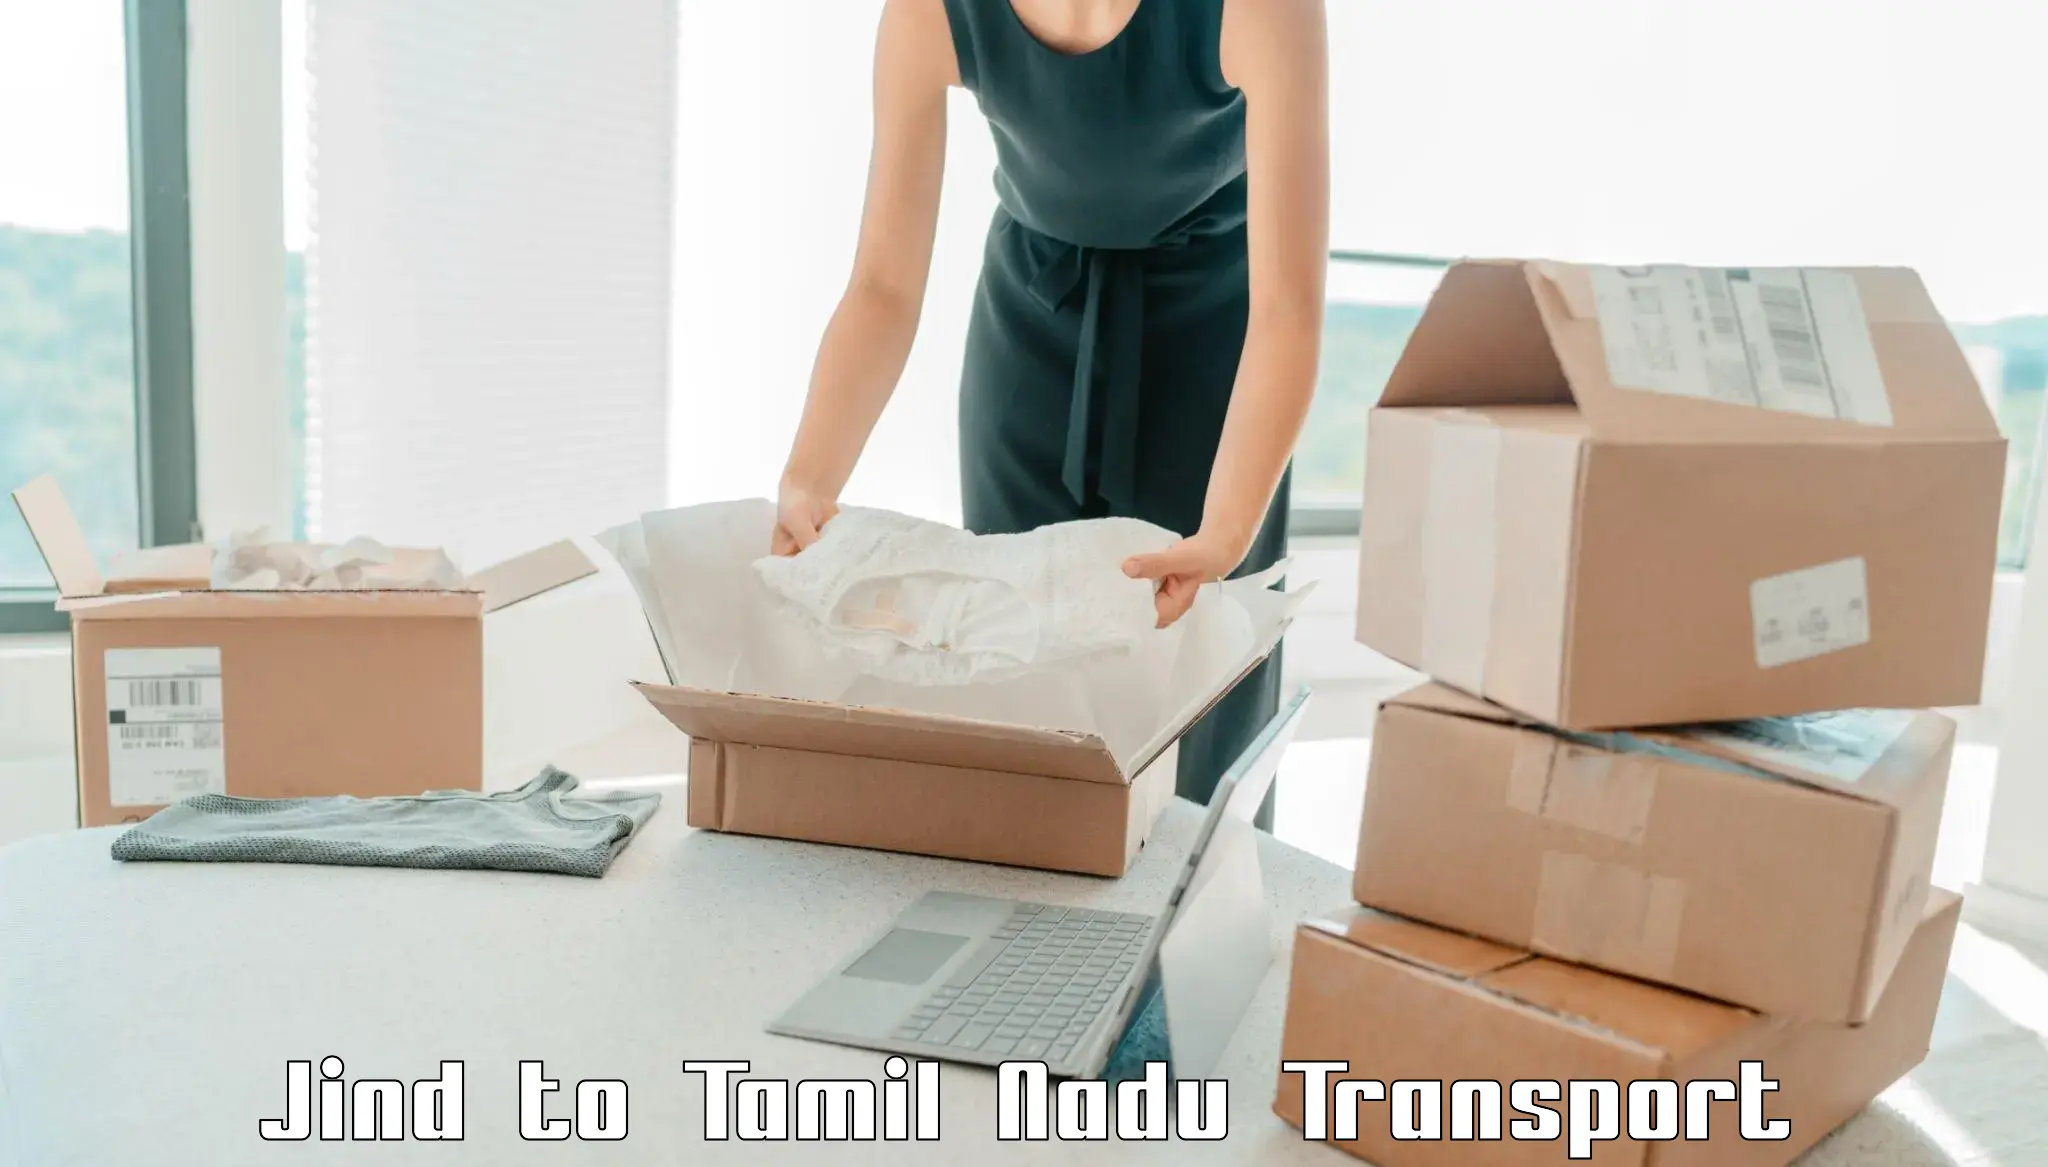 Container transport service Jind to Tiruturaipundi